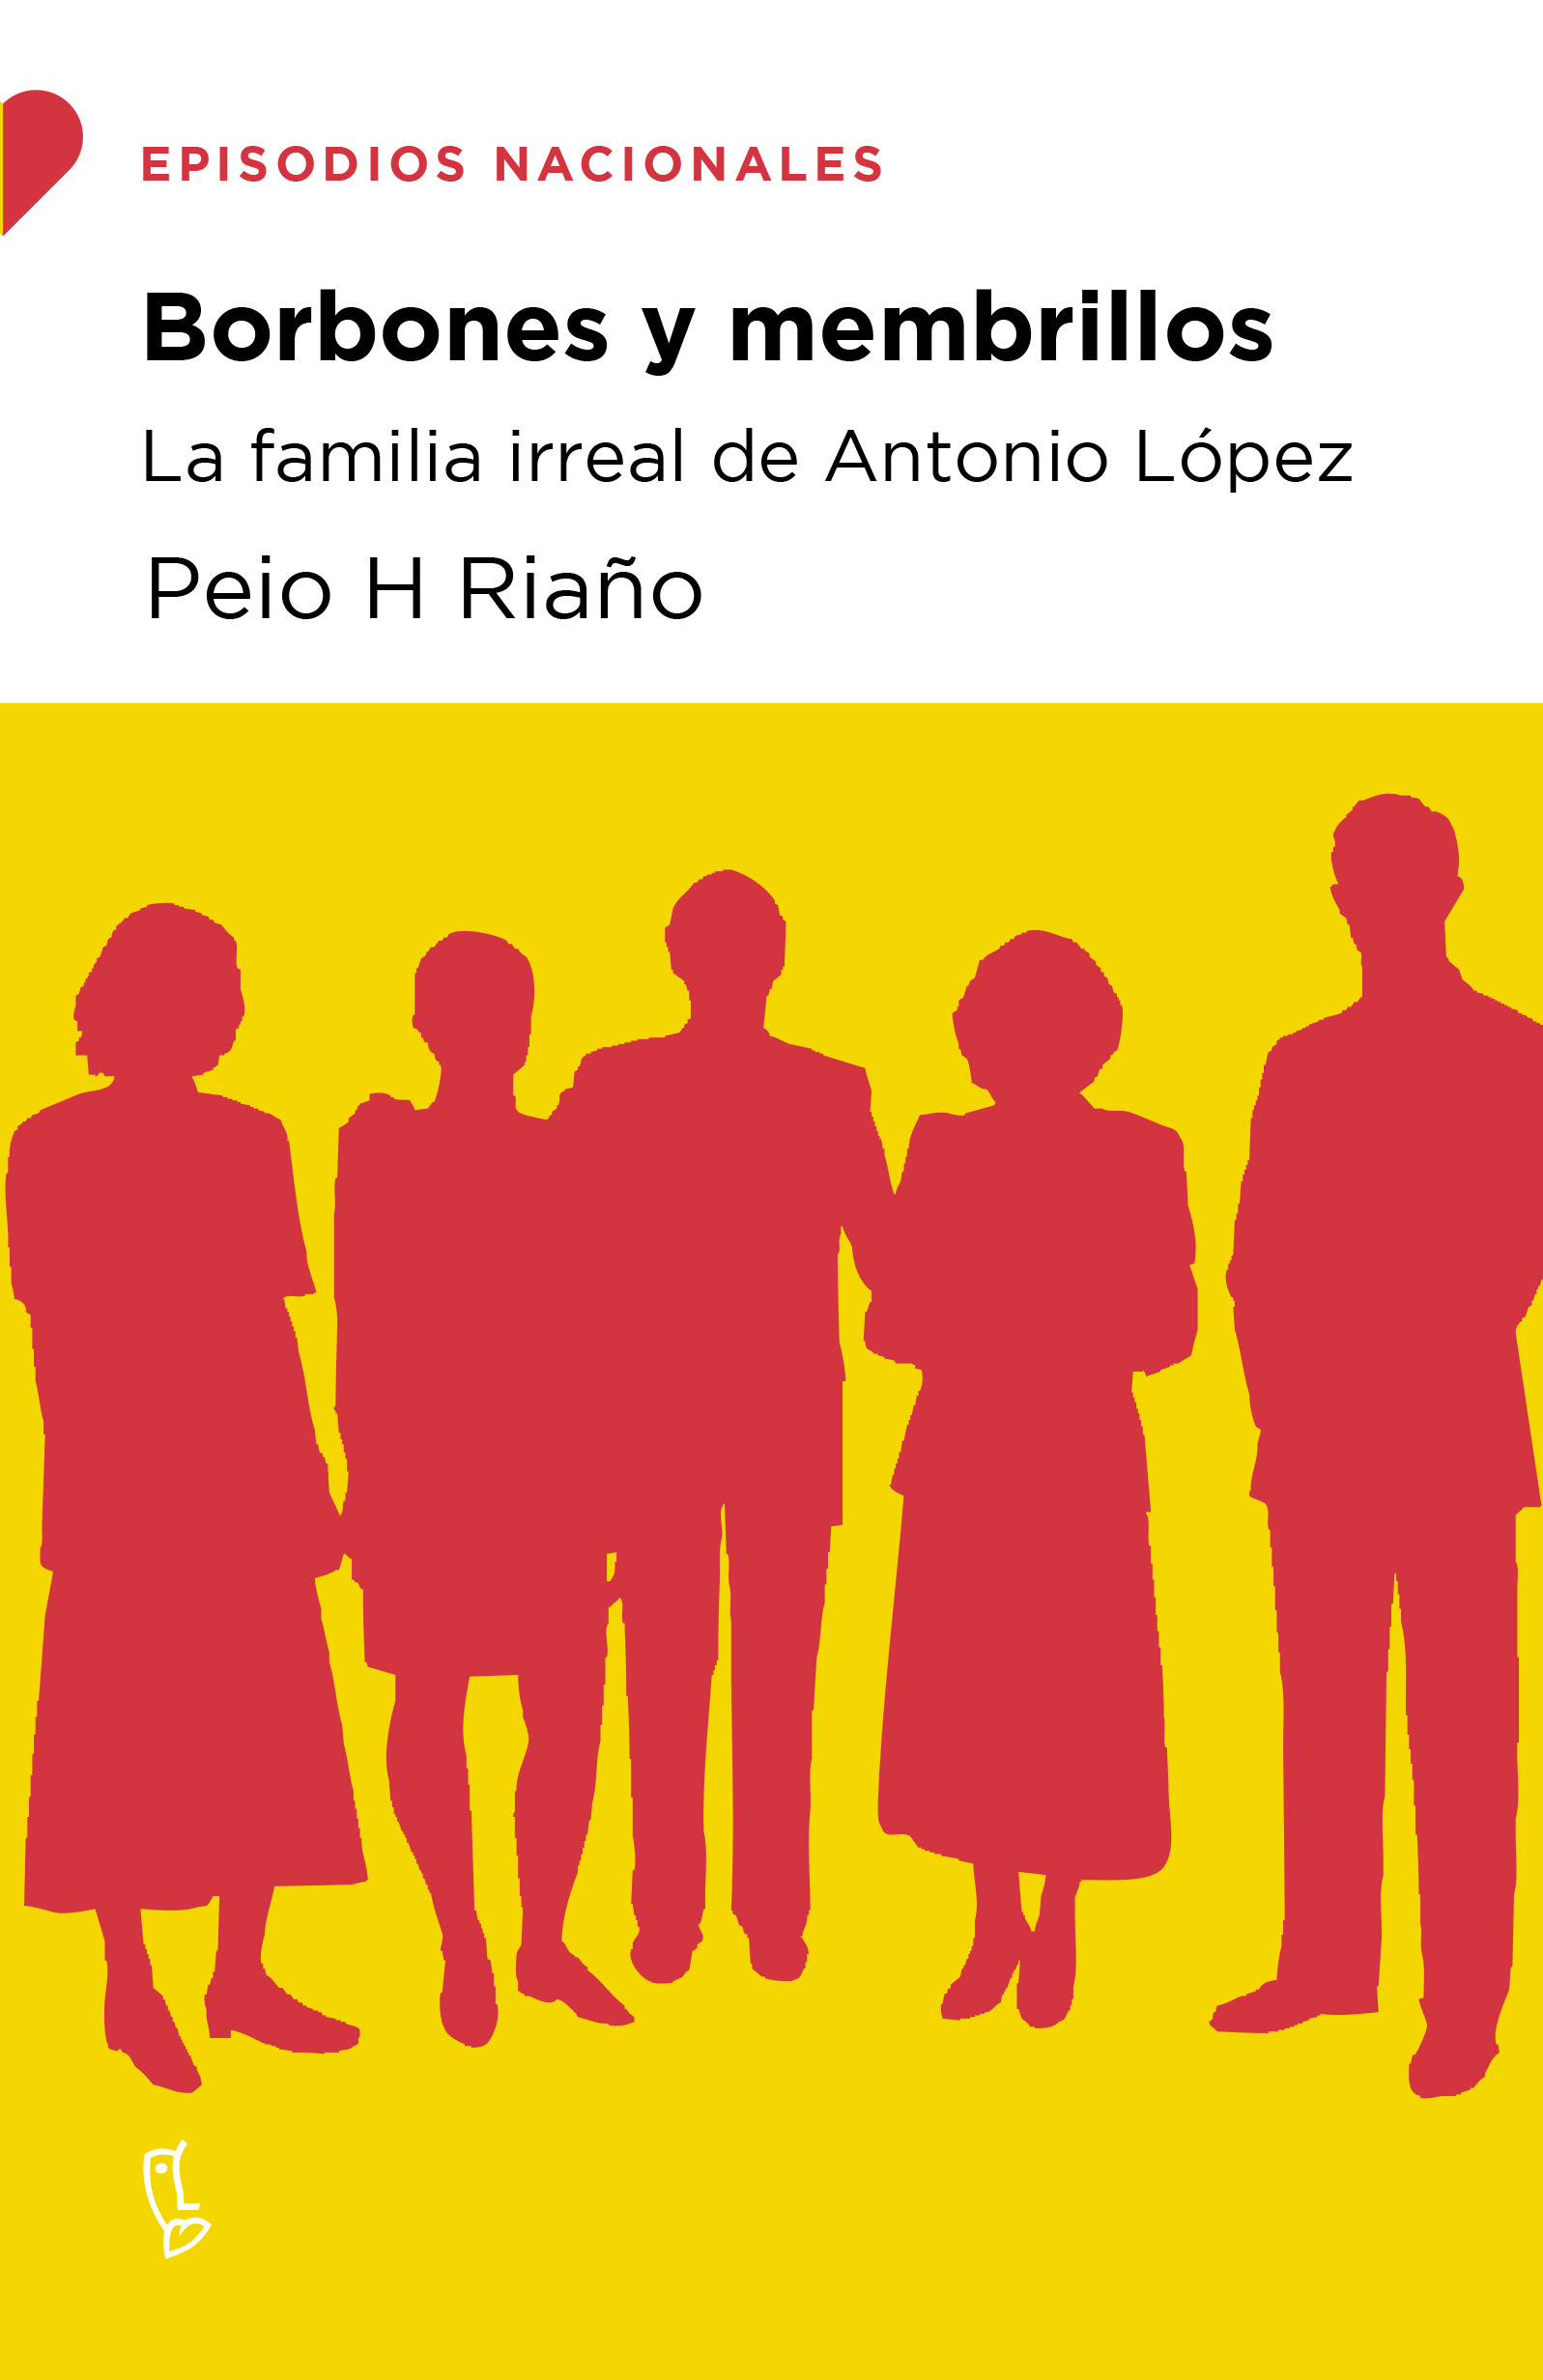 Borbones y membrillos   «La familia irreal de Antonio López» (9788483812808)